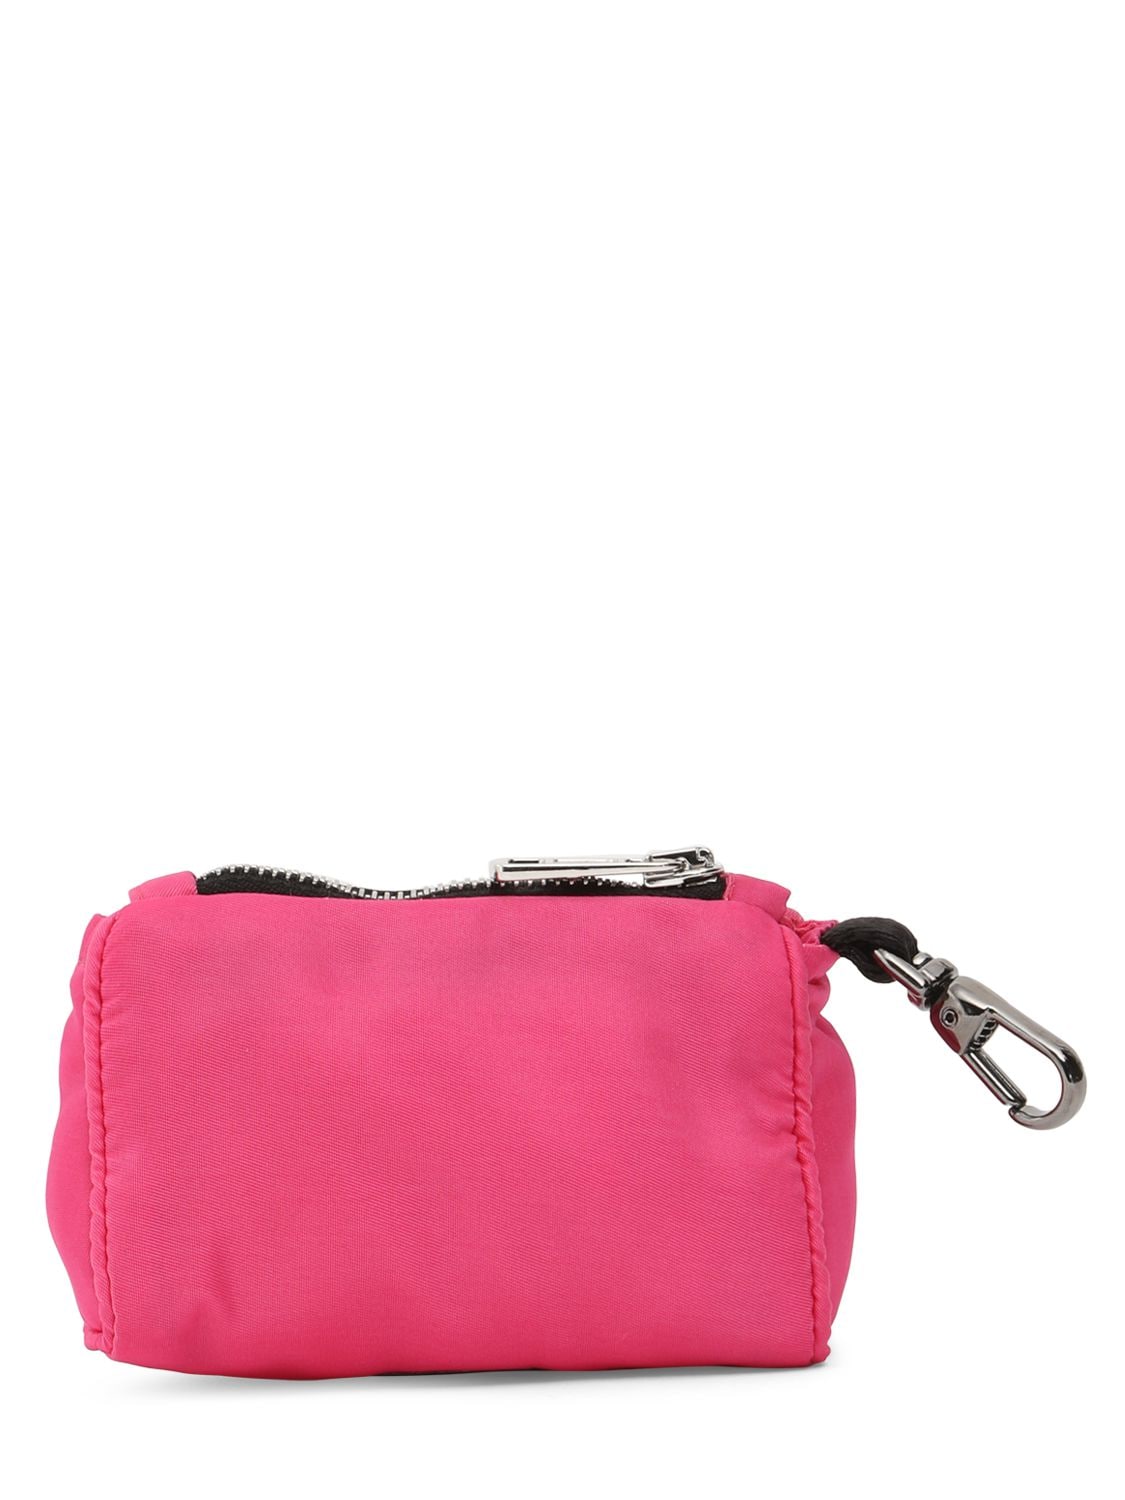 Shop Moncler Genius Moncler X Poldo Satin Dog Bag Holder In Pink